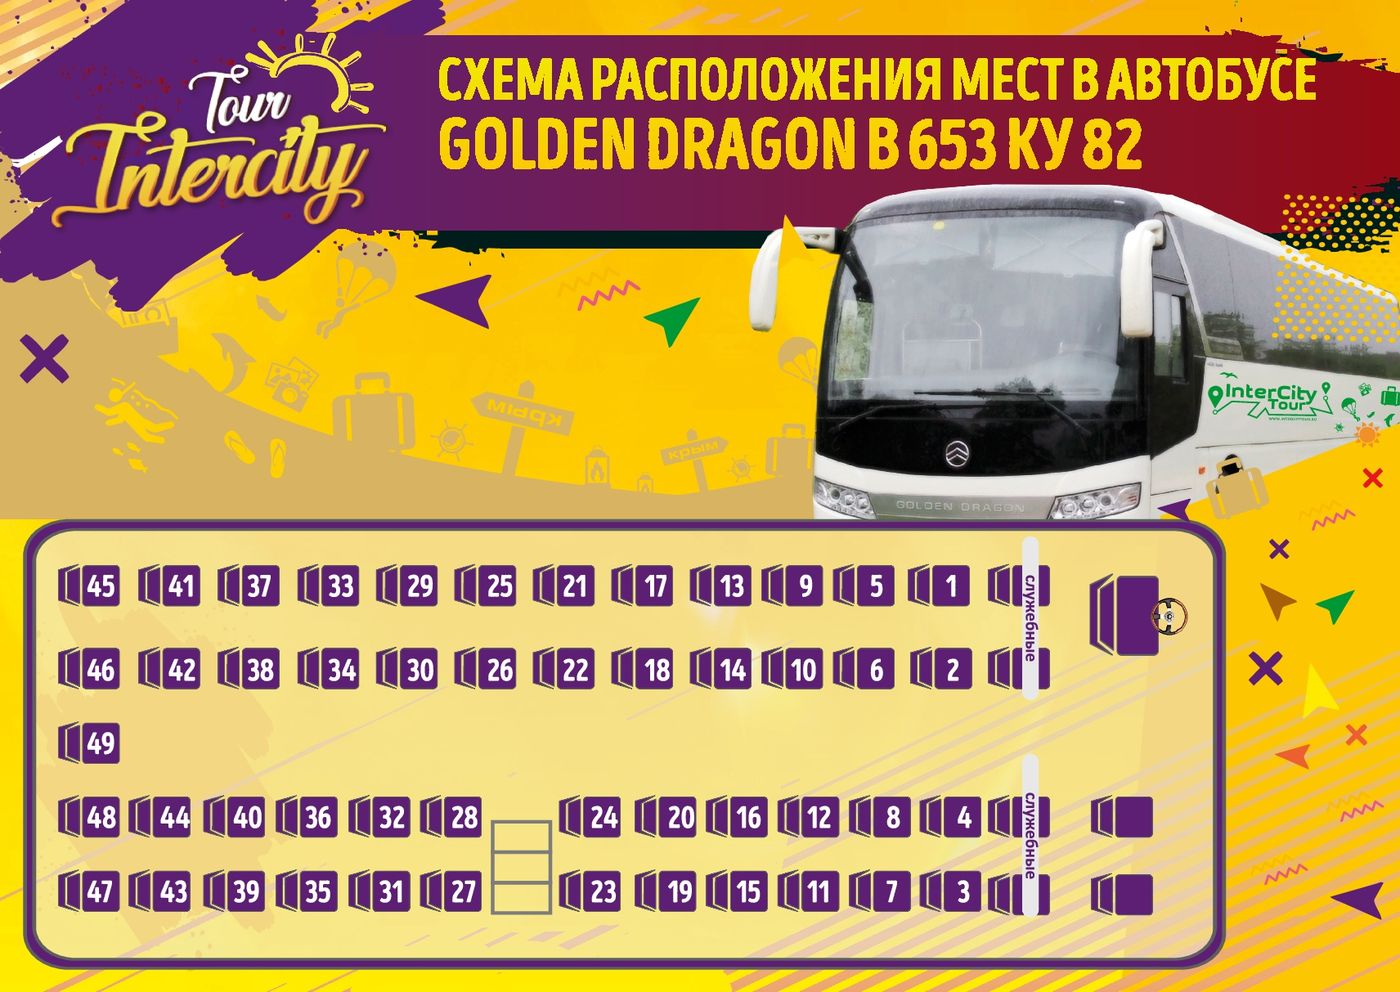 Москва расположение автобусов. Автобус Golden Dragon 39 мест. Расположение мест в автобусе. Места в автобусе схема. Расположение мест в междугороднем автобусе схема.